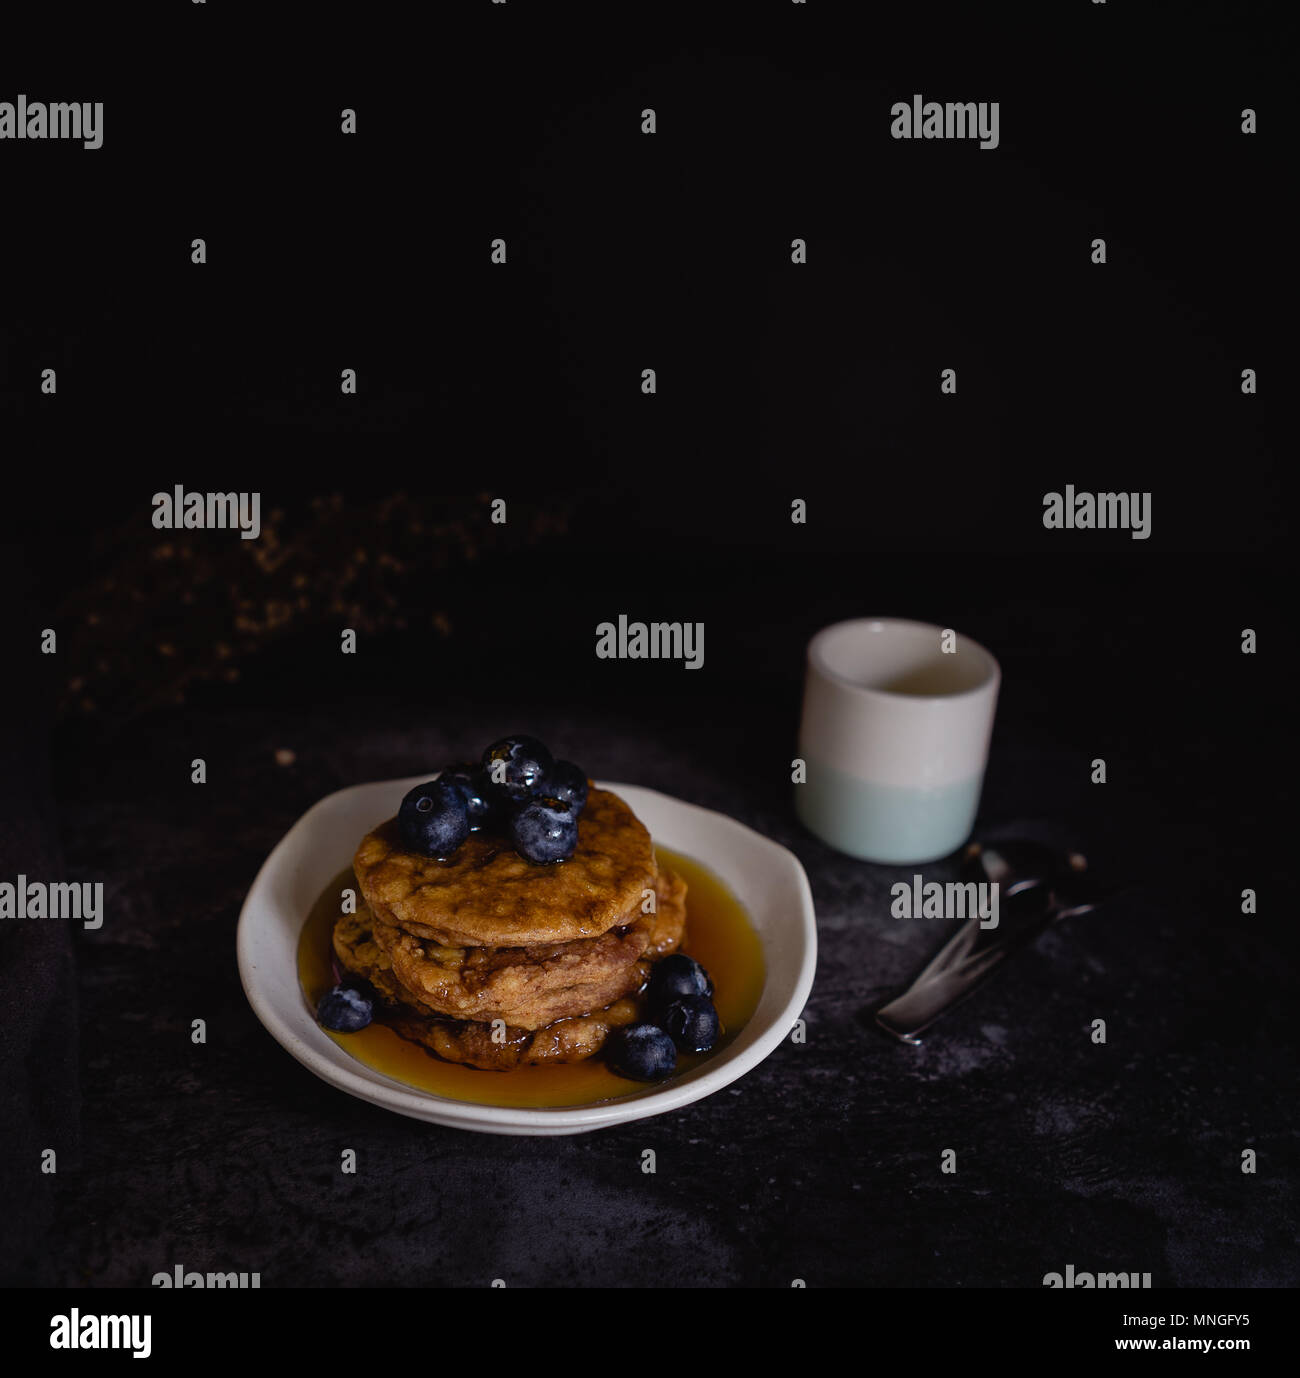 Dicke flauschige Blueberry Pancakes, dunklen Hintergrund Stockfoto